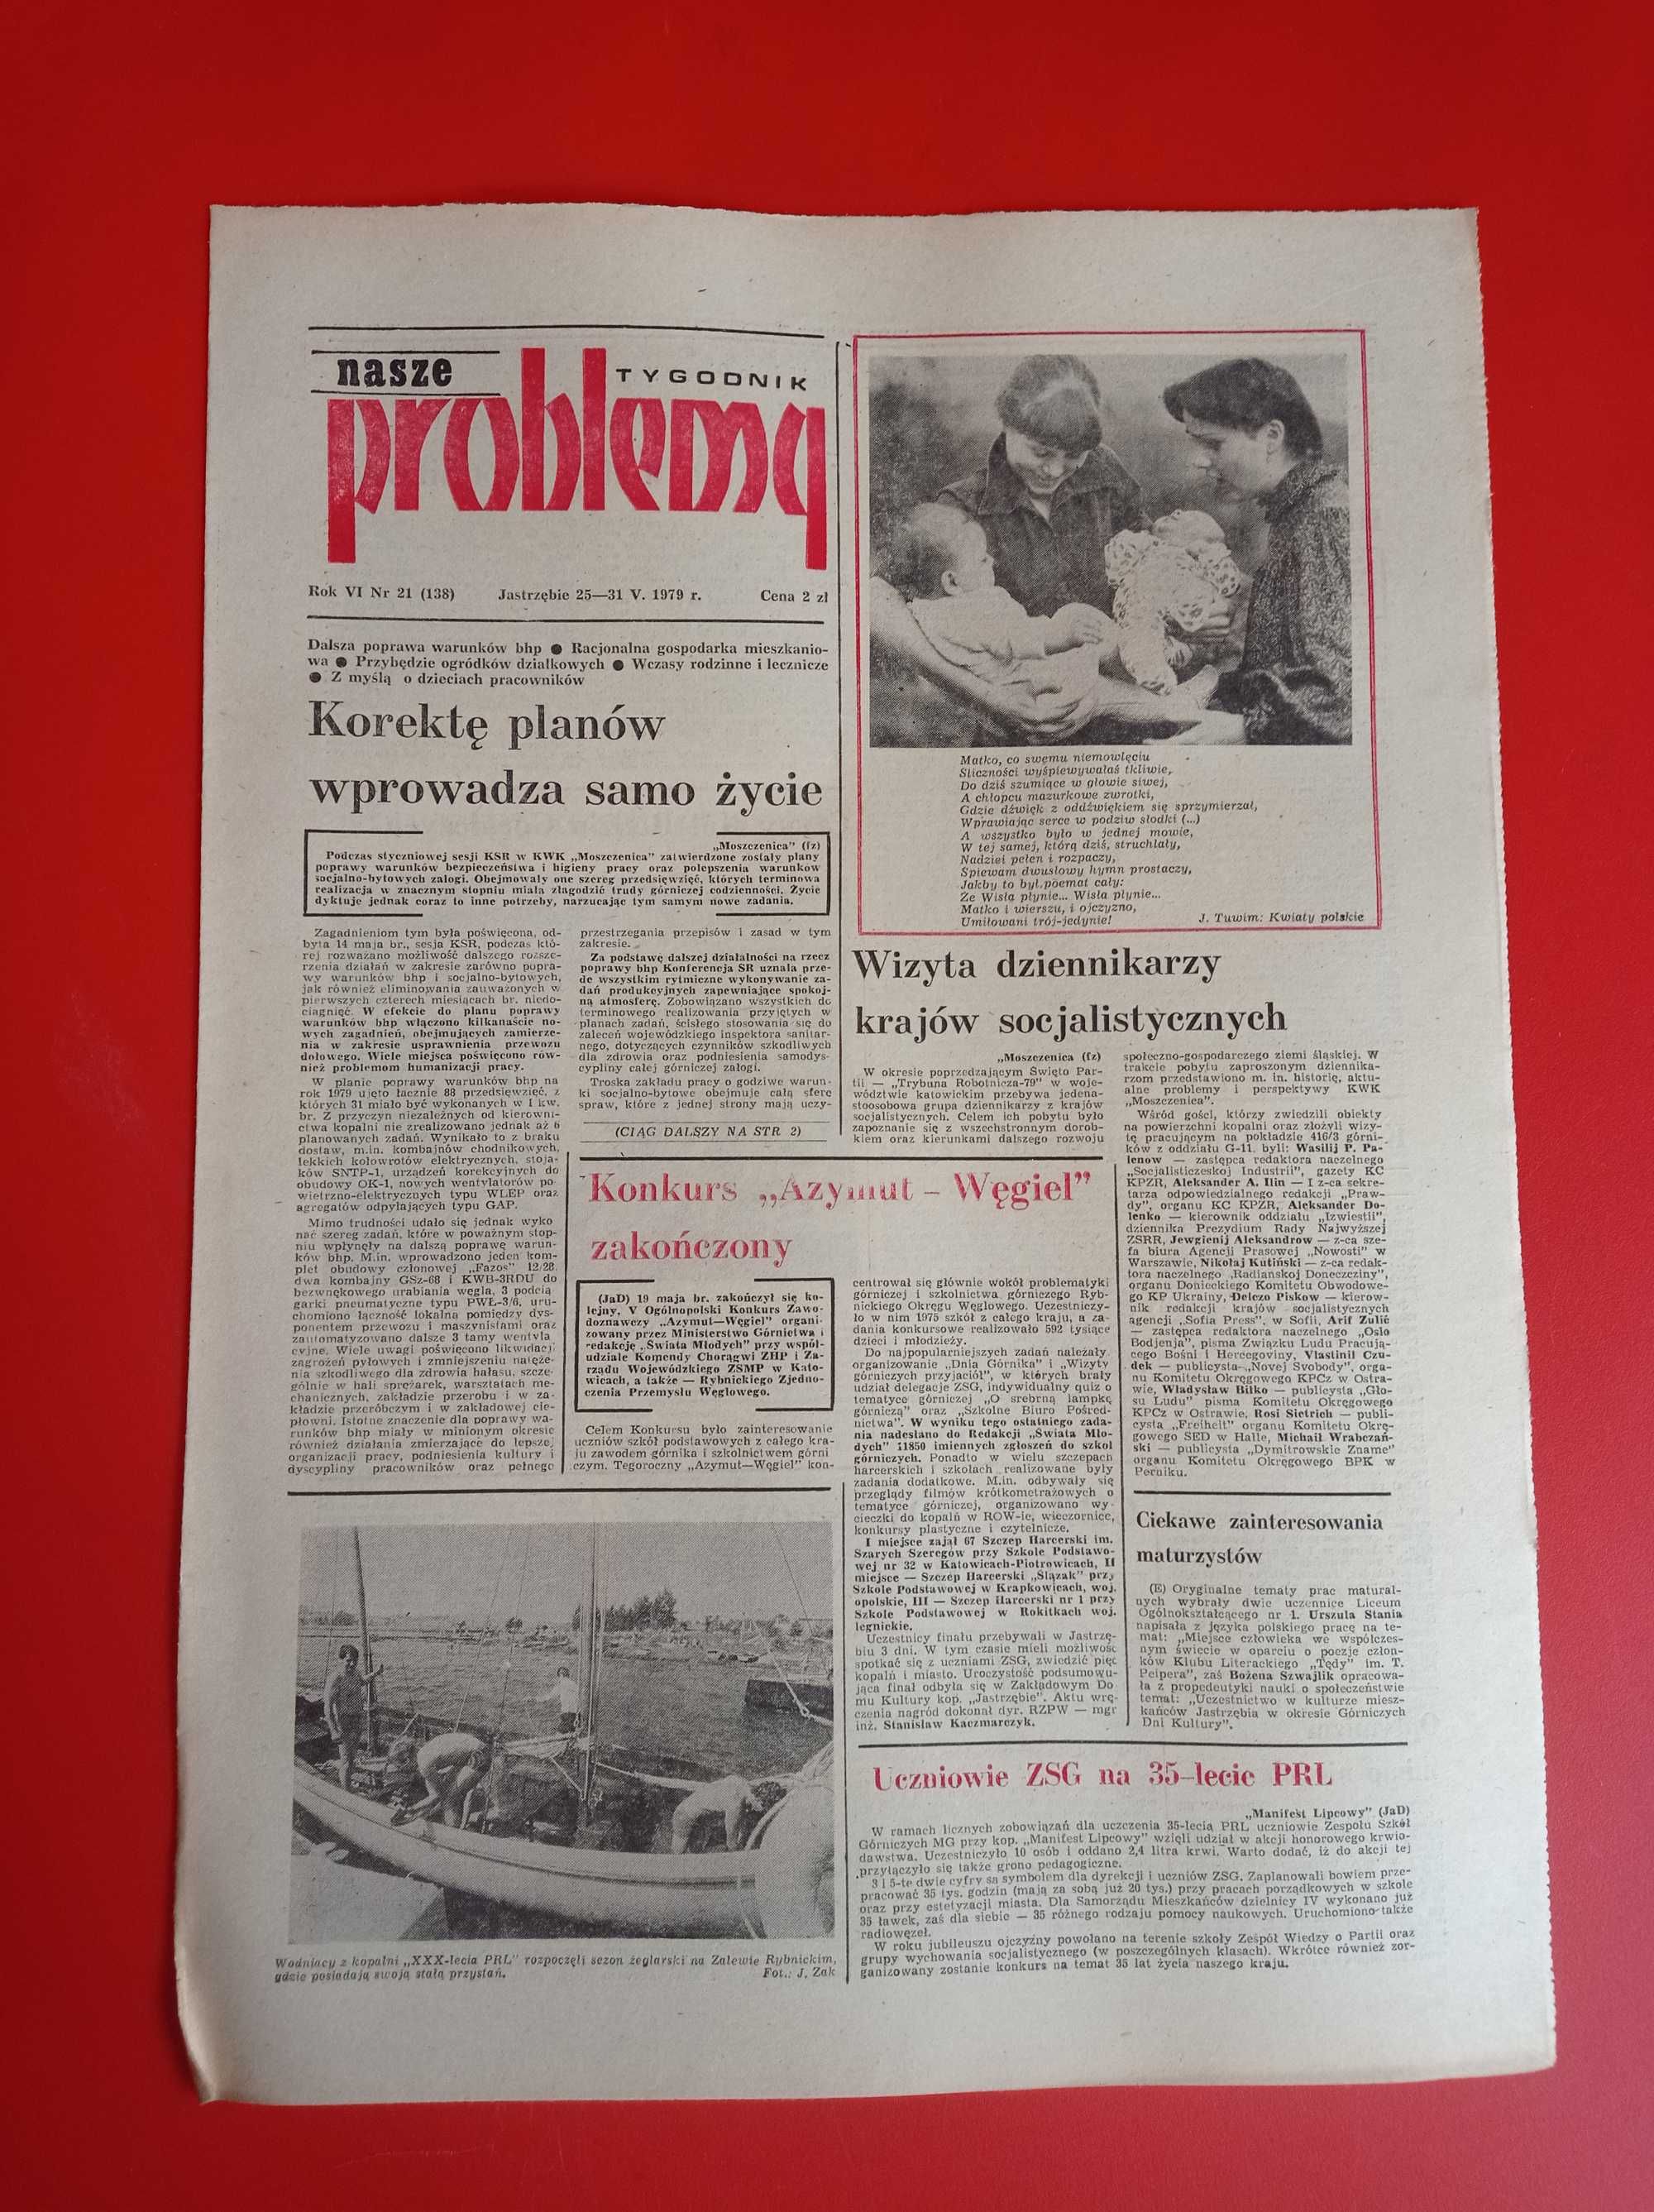 Nasze problemy, Jastrzębie, nr 21, 25-31 maja 1979